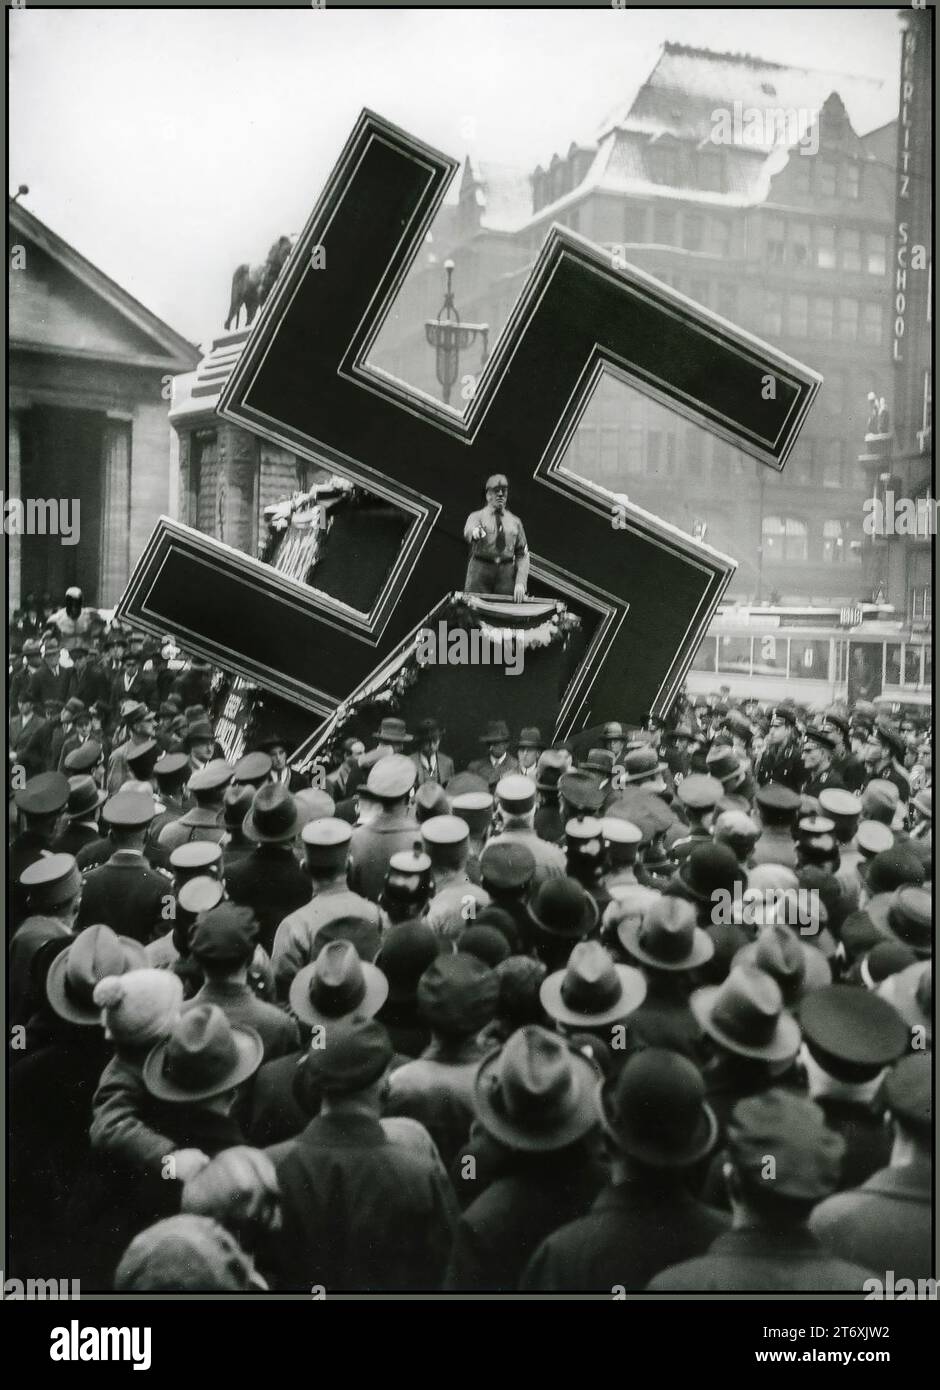 DISCURSO DE LA ESVÁSTICA STURMABTEILUNG PROPAGANDA DE LA MULTITUD NSDAP Antes de la Guerra Conmitida nazi usando la esvástica como un gran apoyo de propaganda móvil, como aquí en una fotografía tomada en Hamburgo, Alemania, durante un discurso del NSDAP en 1933 Foto de stock